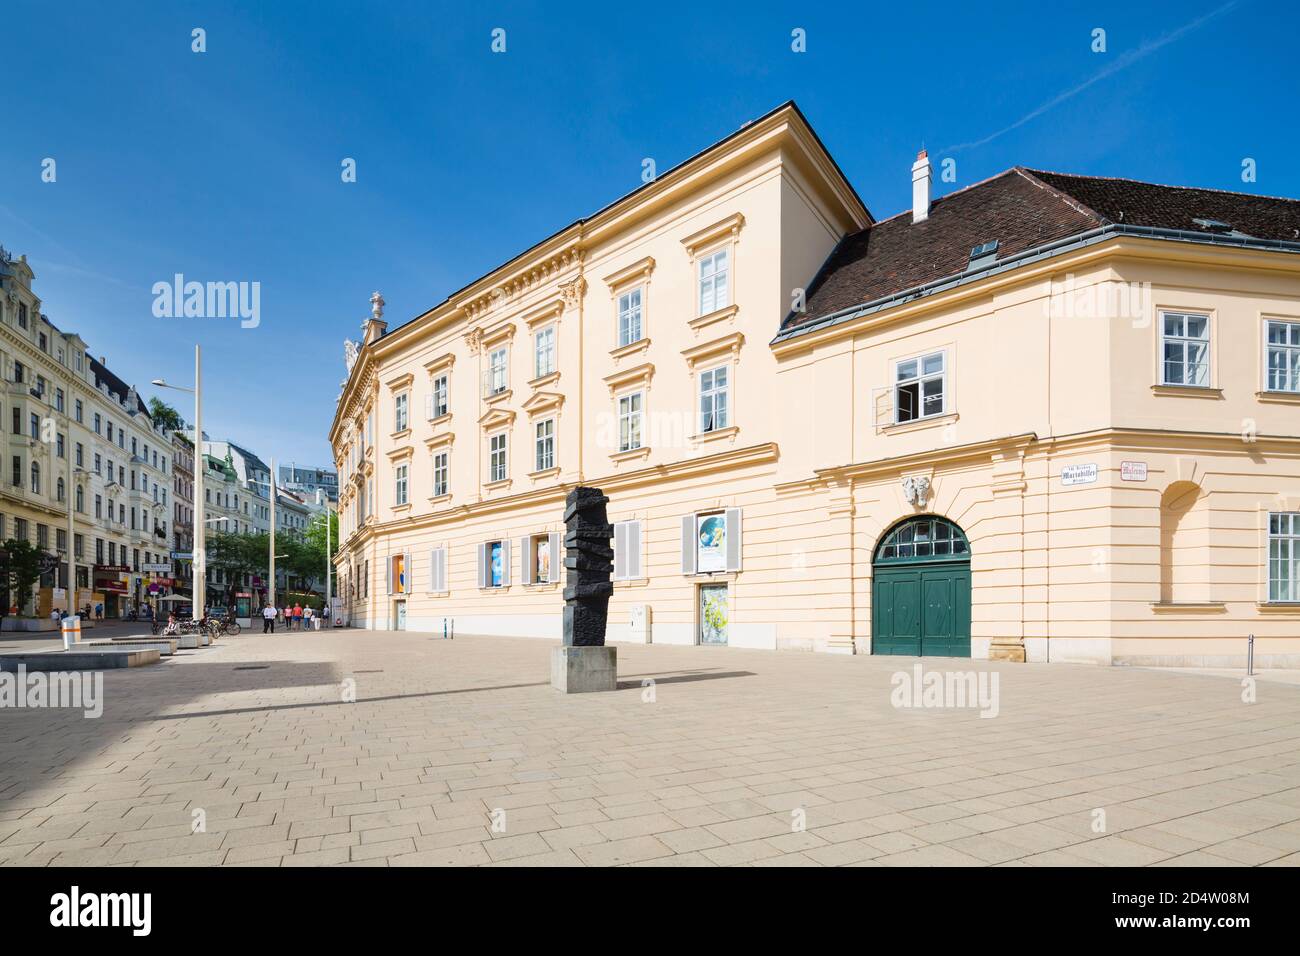 VIENNE - MAI 3 : édifice du théâtre Dschungel du Museumsquartier MQ à Vienne, Autriche, avec ciel bleu le 3 mai 2018 Banque D'Images